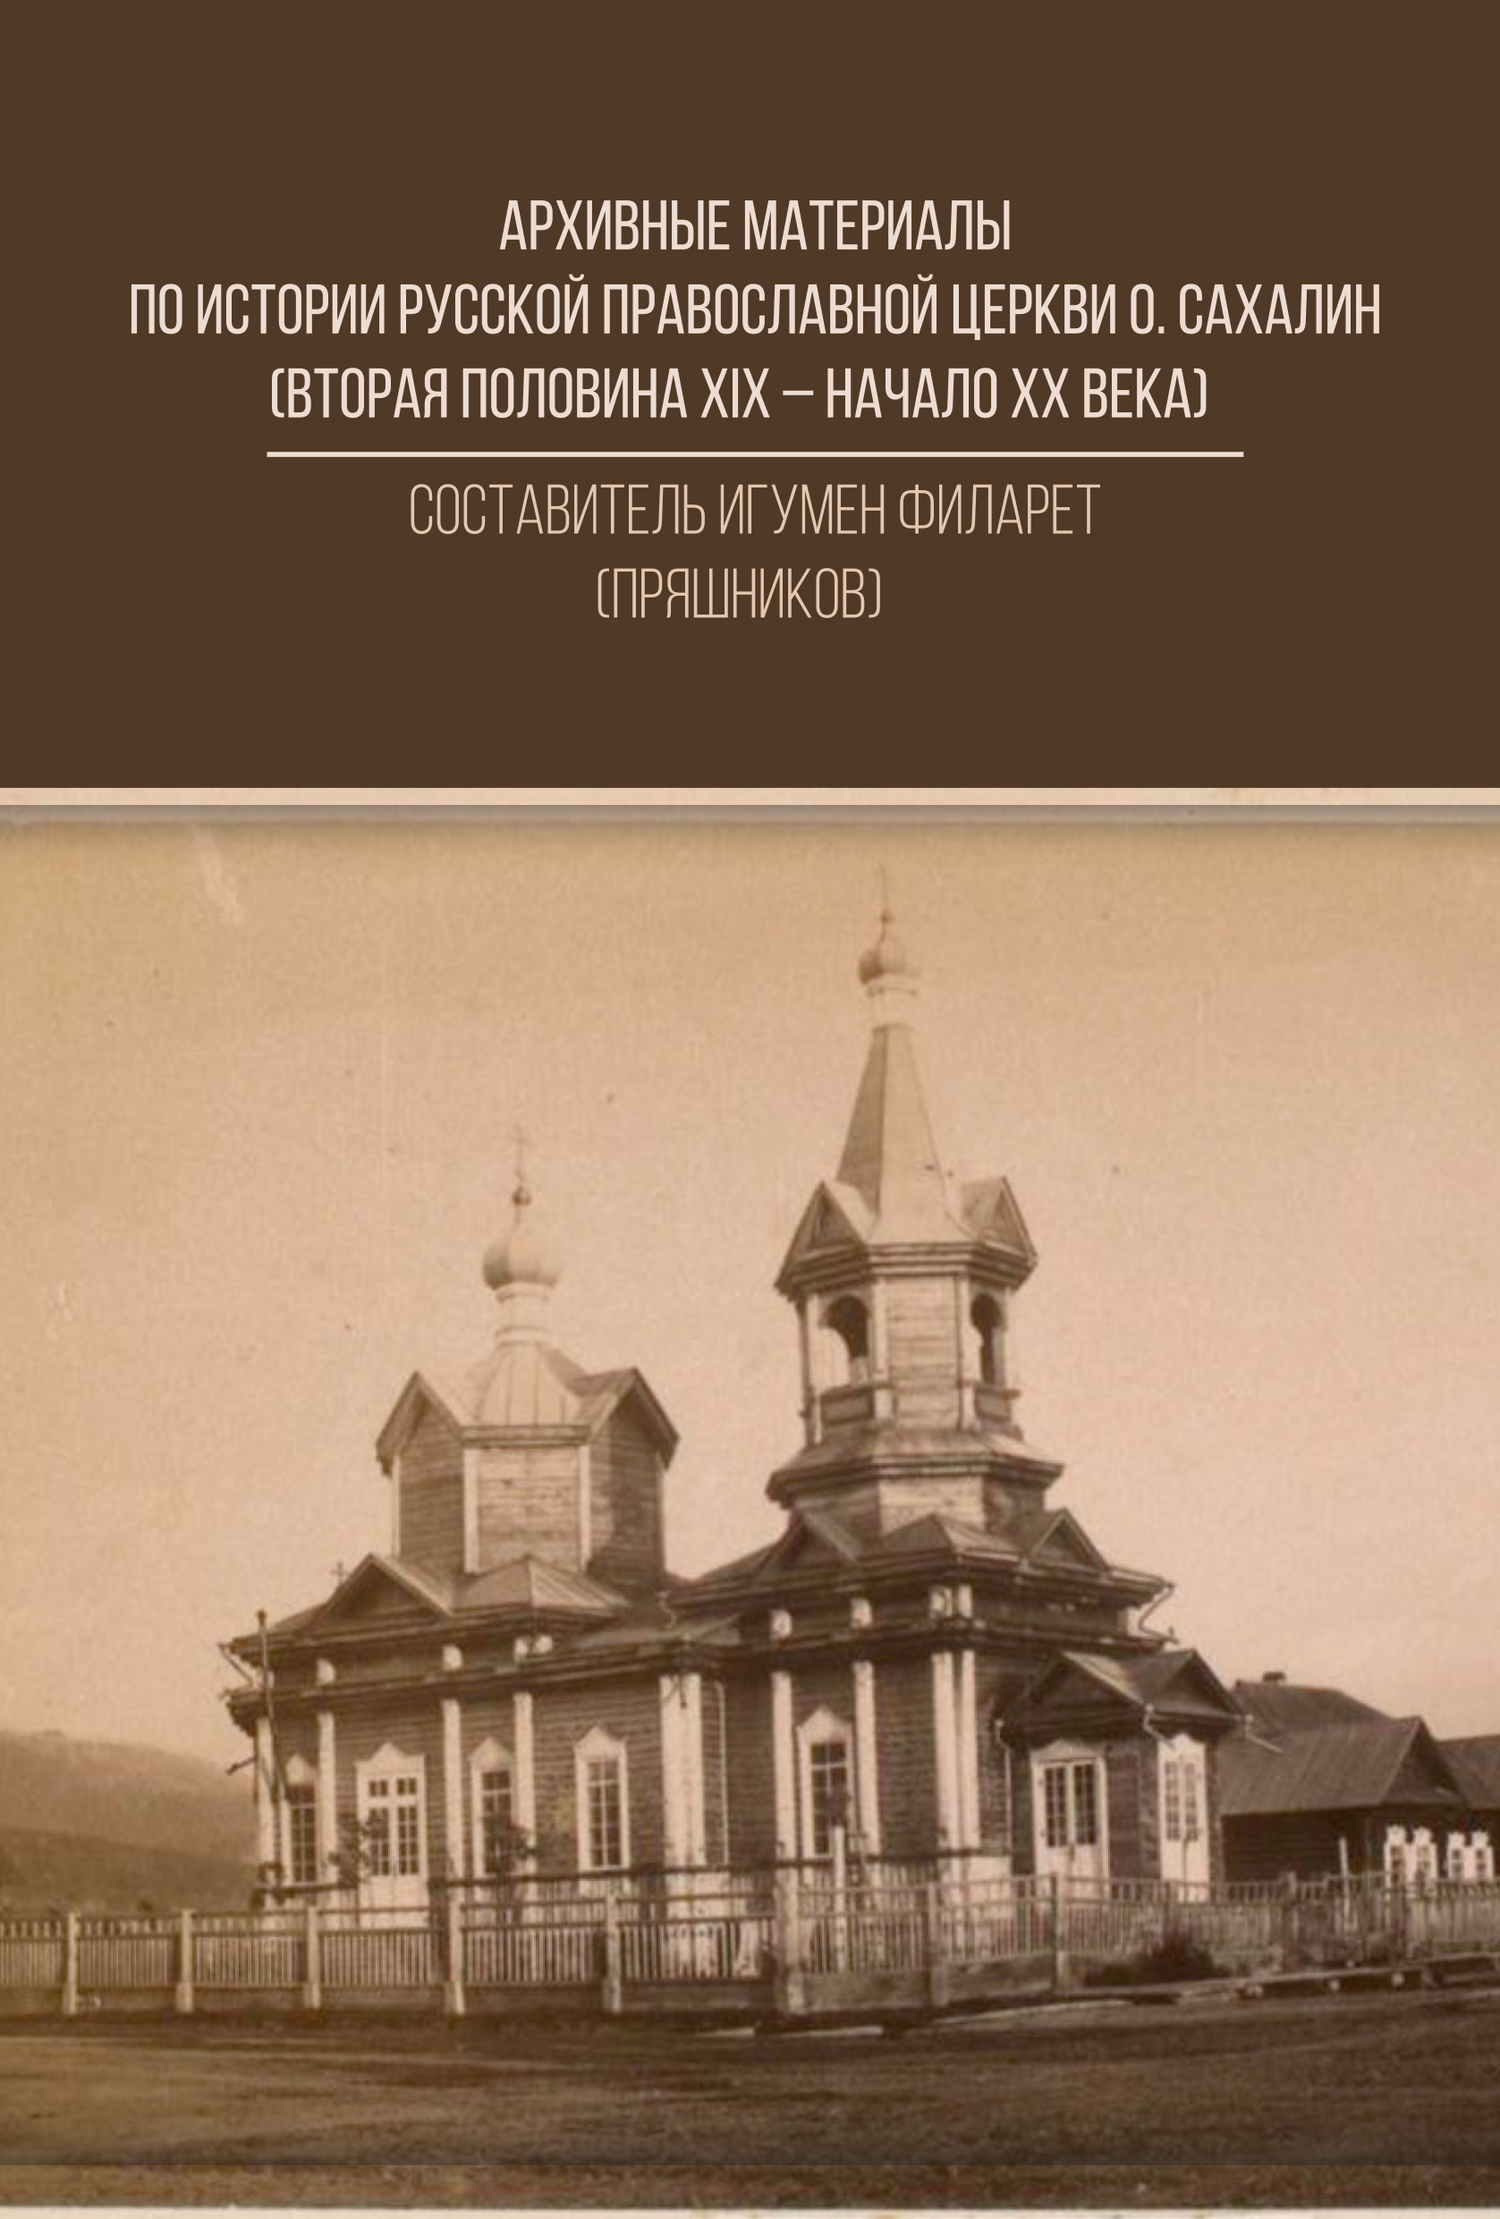 Скачать Архивные материалы по истории Русской Православной Церкви о. Сахалин (вторая половина ХIХ - начало ХХ века) быстро